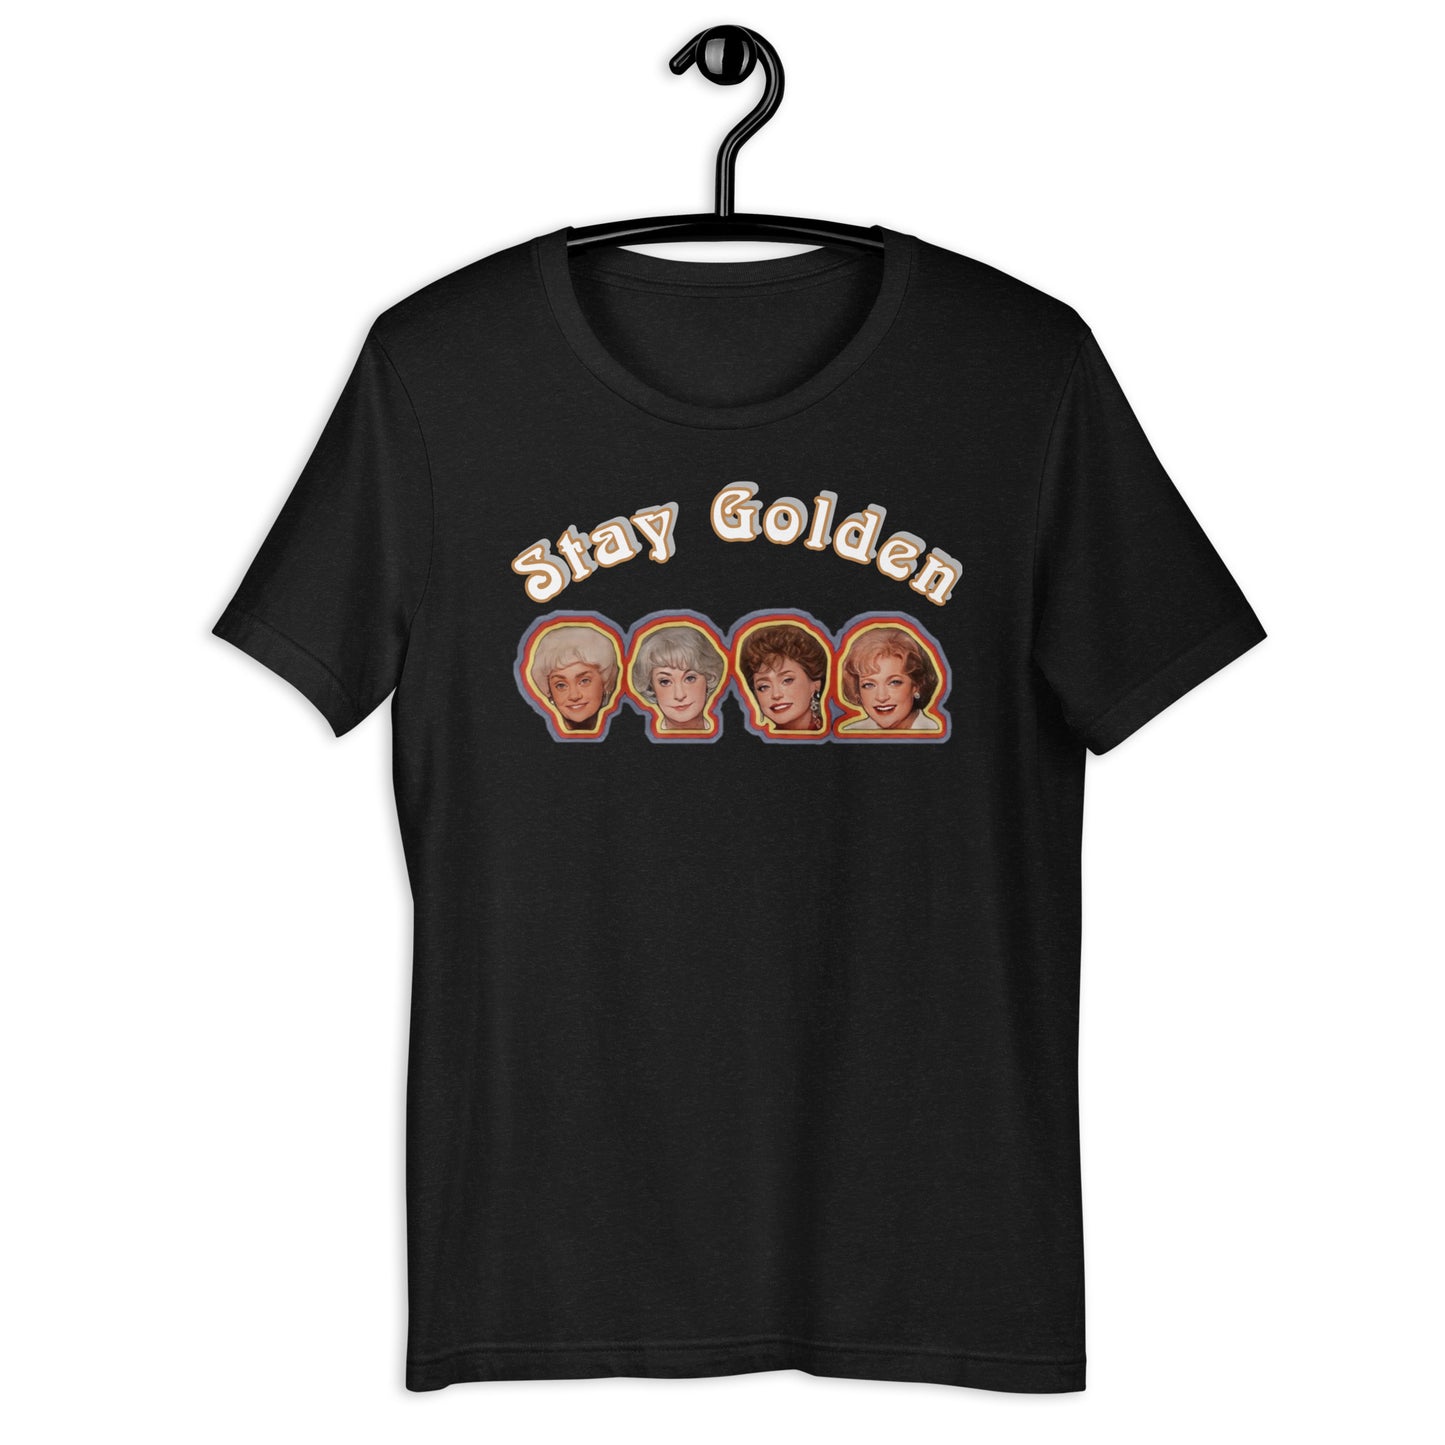 STAY GOLDEN T-SHIRT